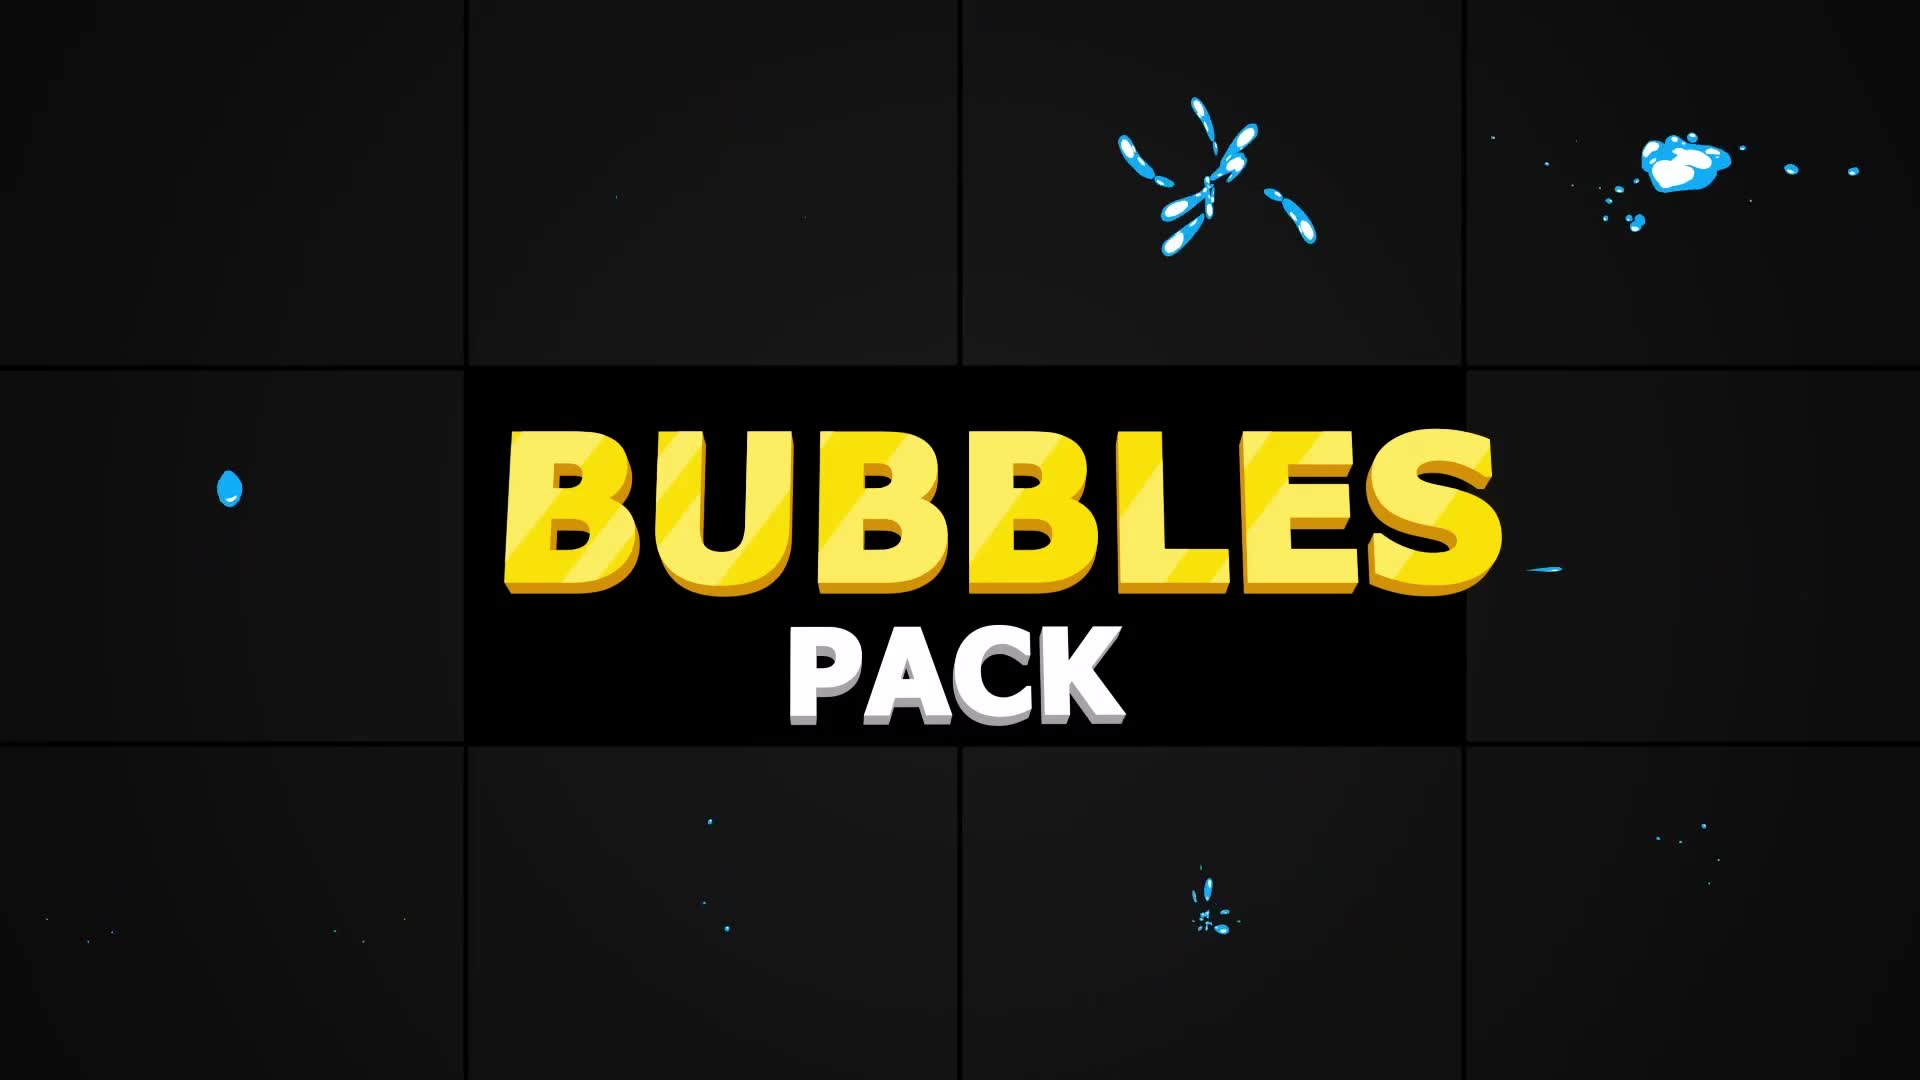 Bubbles Pack | Premiere Pro MOGRT Videohive 30439831 Premiere Pro Image 2